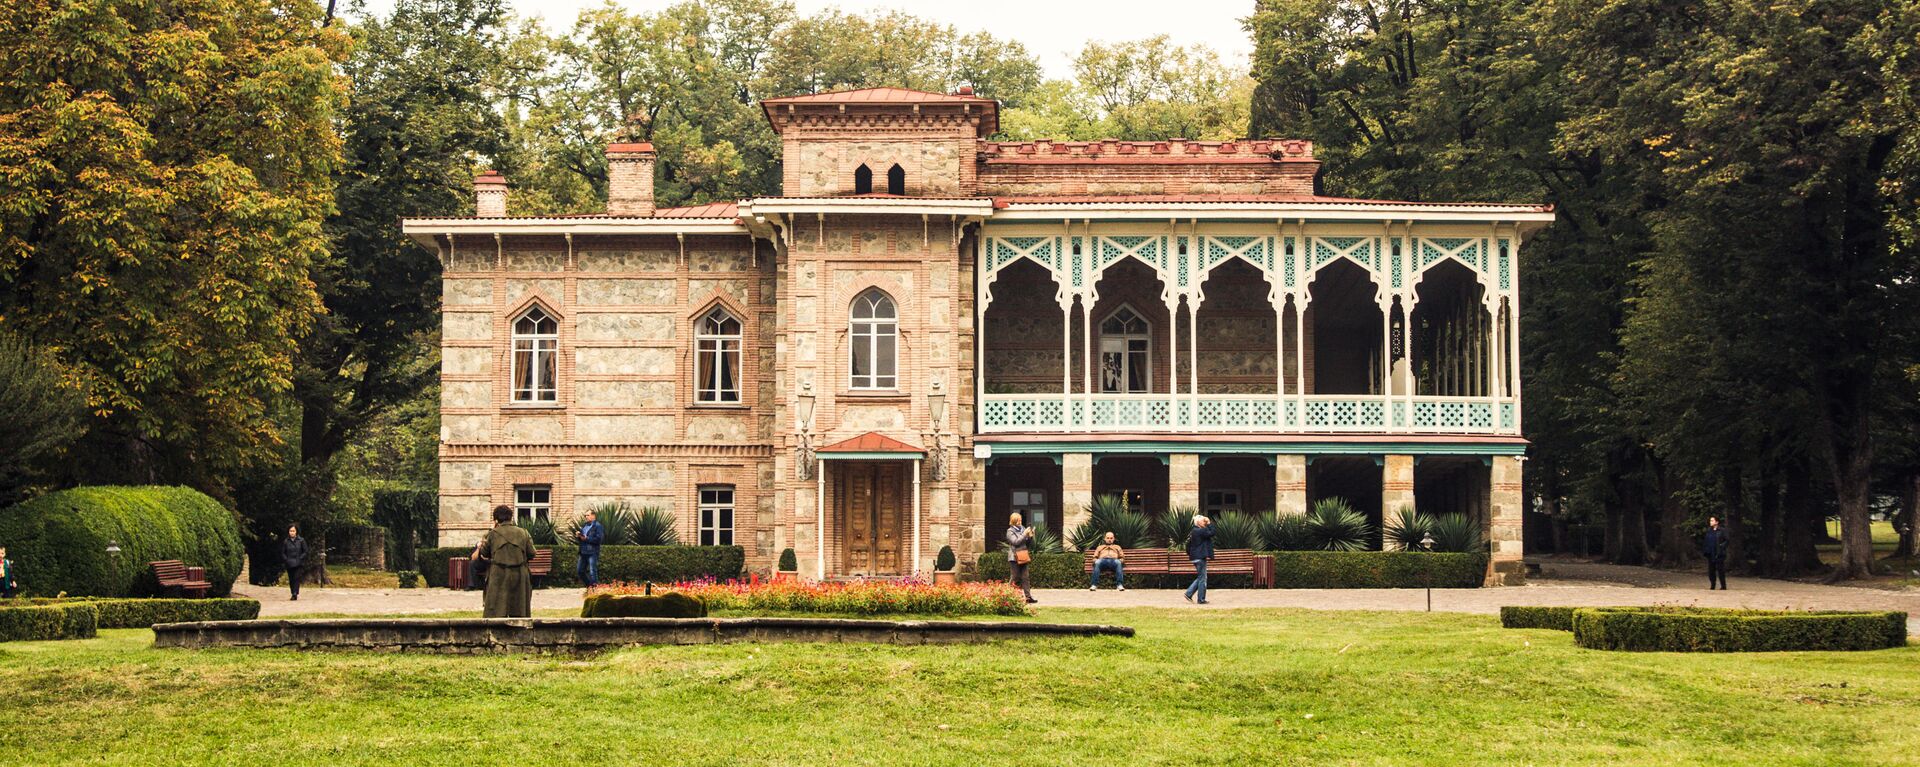 Дворец князей Чавчавадзе в Цинандали - Sputnik Грузия, 1920, 14.04.2021